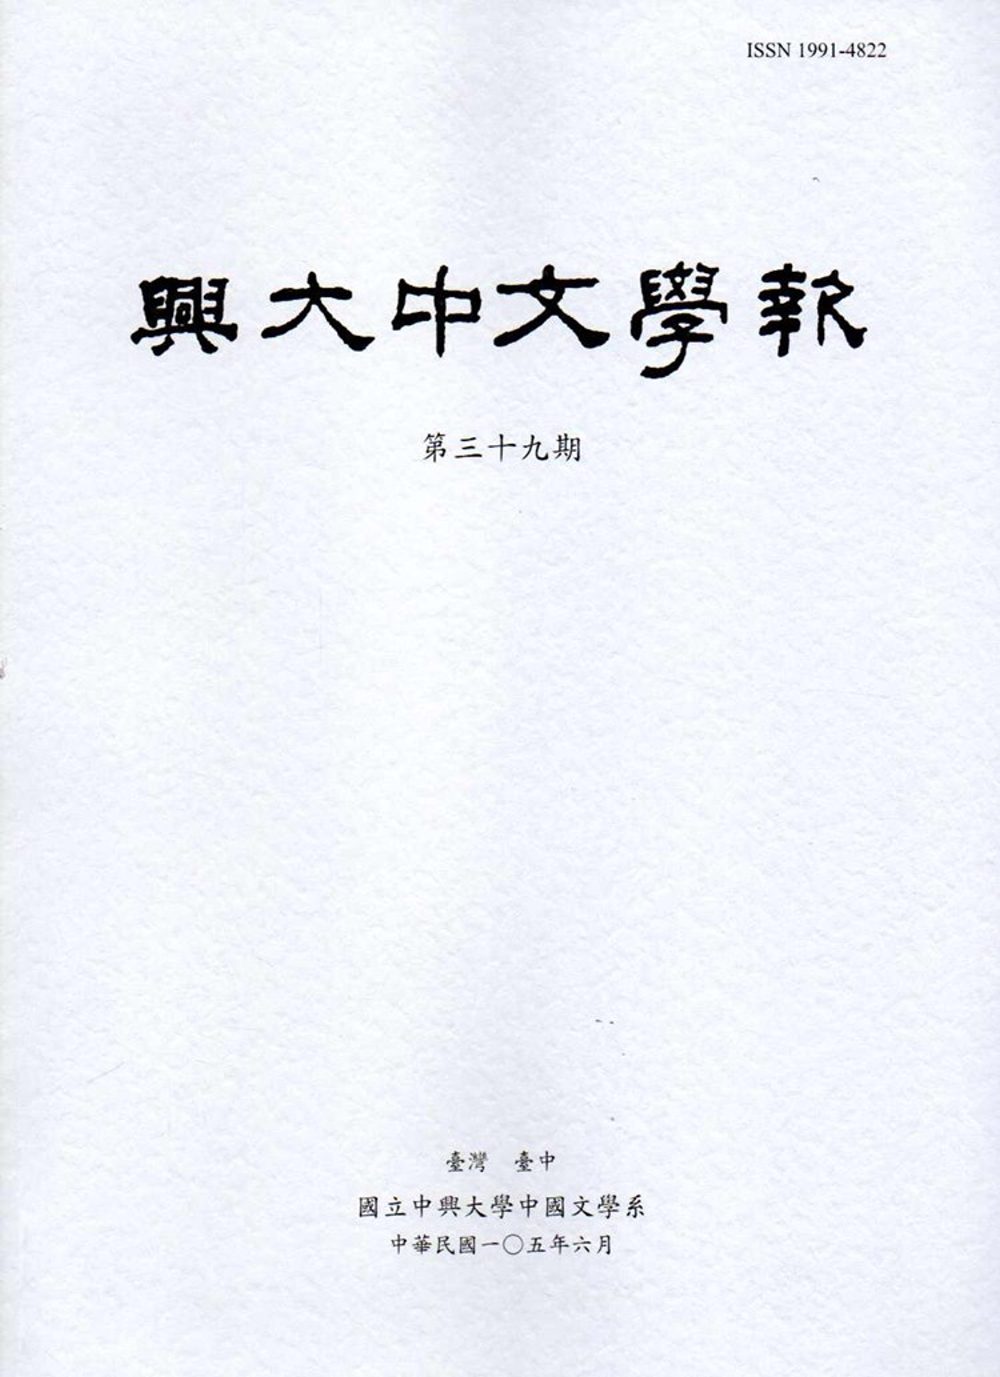 興大中文學報39期(105年06月)